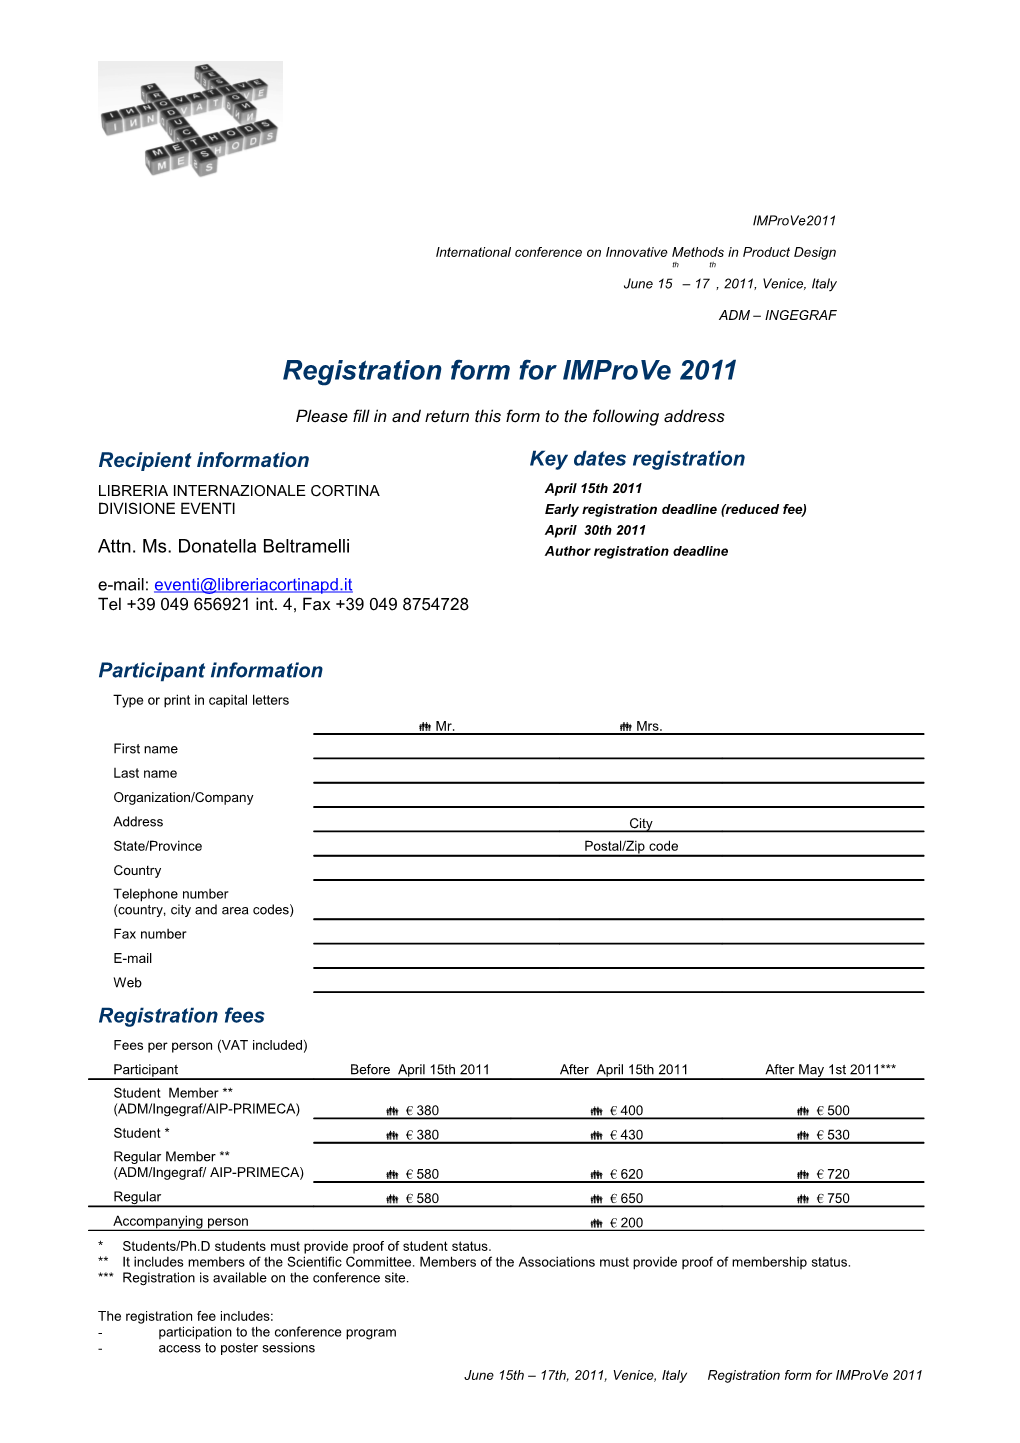 Registration Form for Improve 2011